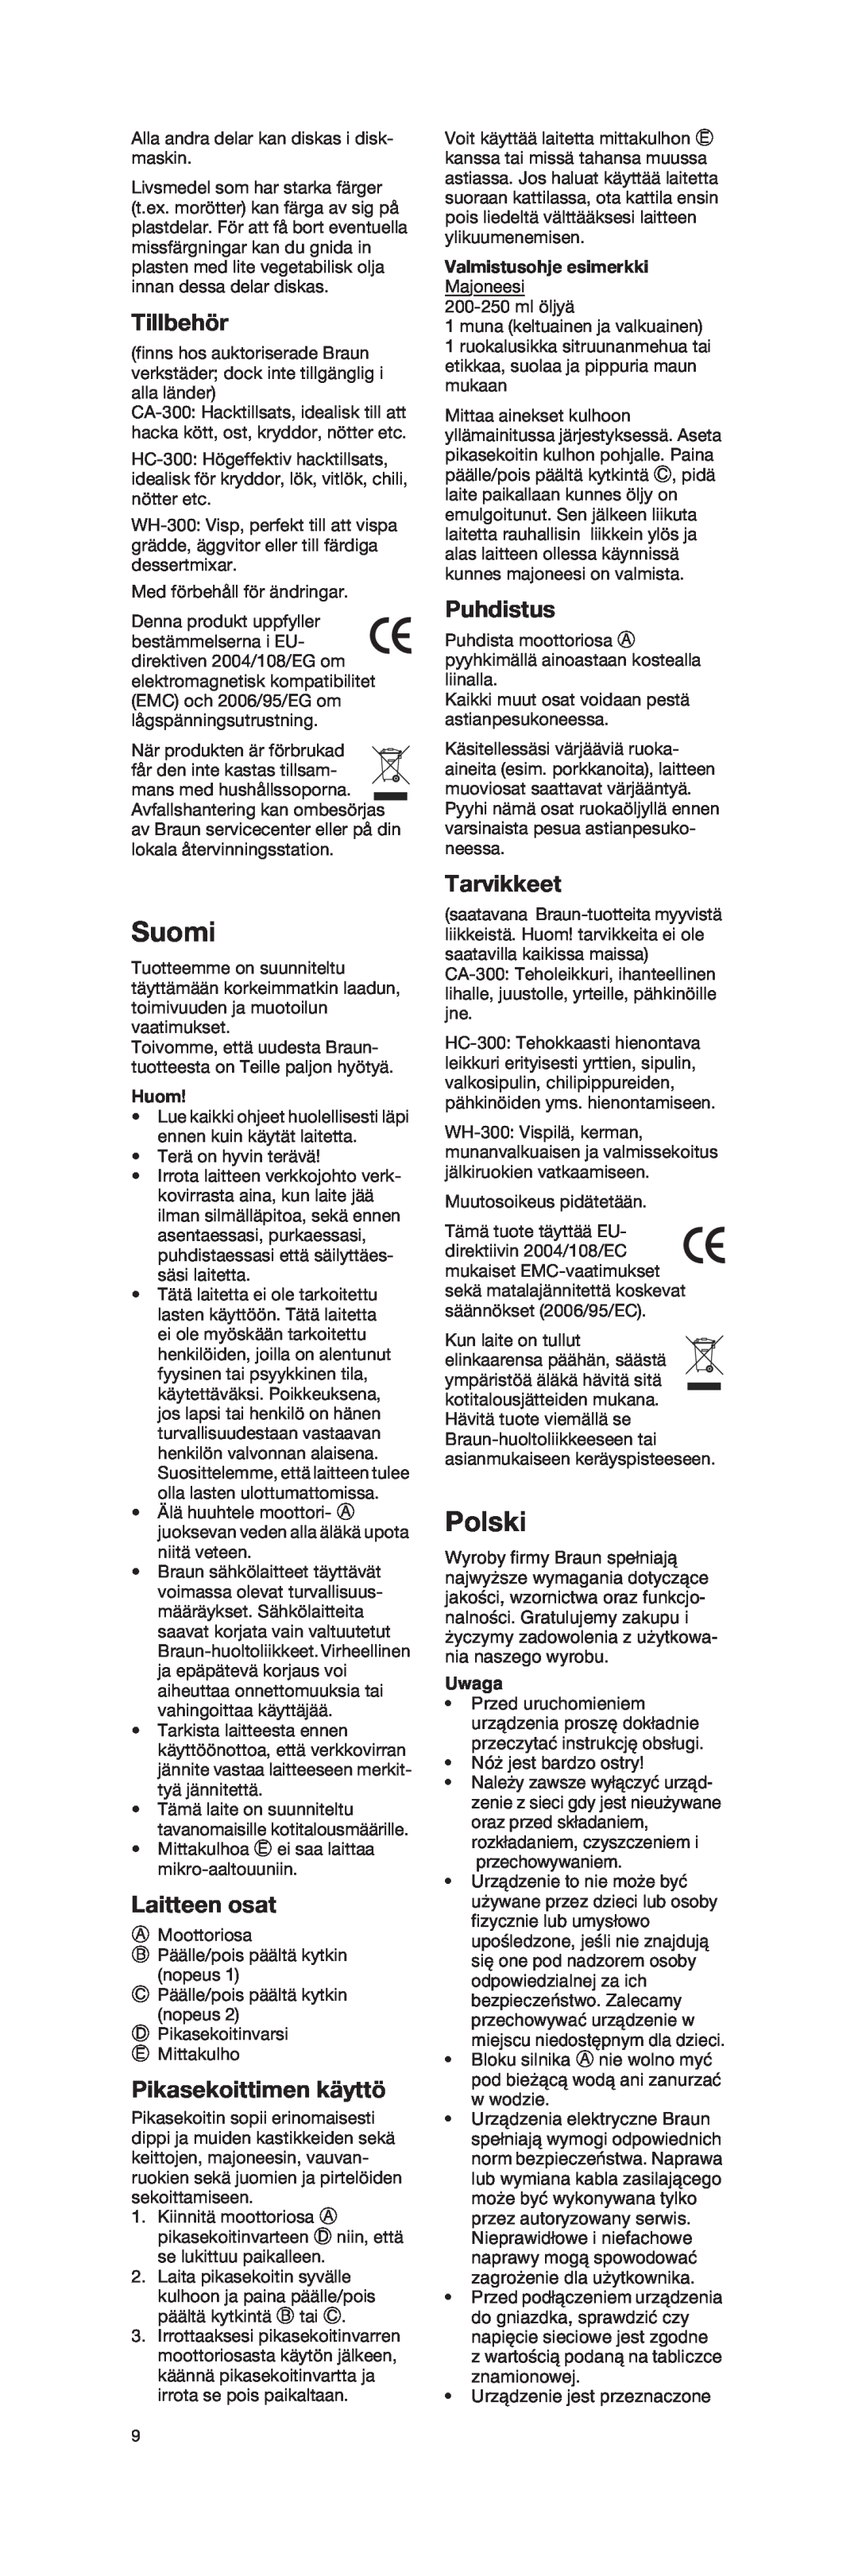 Braun 4162 manual Suomi, Polski, Tillbehör, Laitteen osat, Pikasekoittimen käyttö, Puhdistus, Tarvikkeet, Huom, Uwaga 